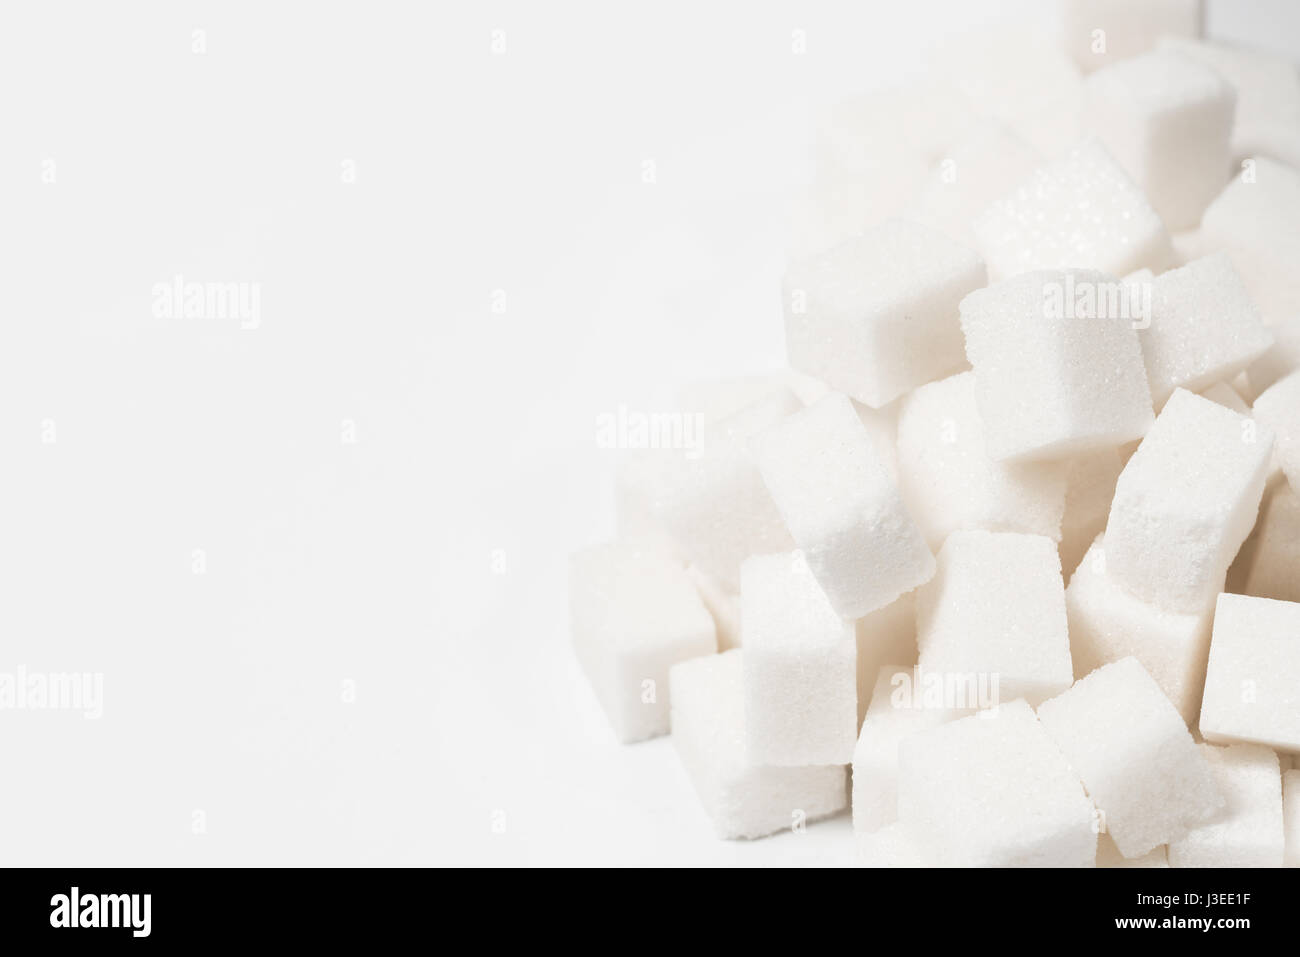 Zucker süße Lebensmittelzutat Hintergrund mit einer engen von einem Haufen von köstlichen weißen Klumpen von Cubes als Symbol für Kochen und Backen und die Diät gesundheitlichen Risiken im Zusammenhang mit Diabetes und Kalorienzufuhr. Stockfoto